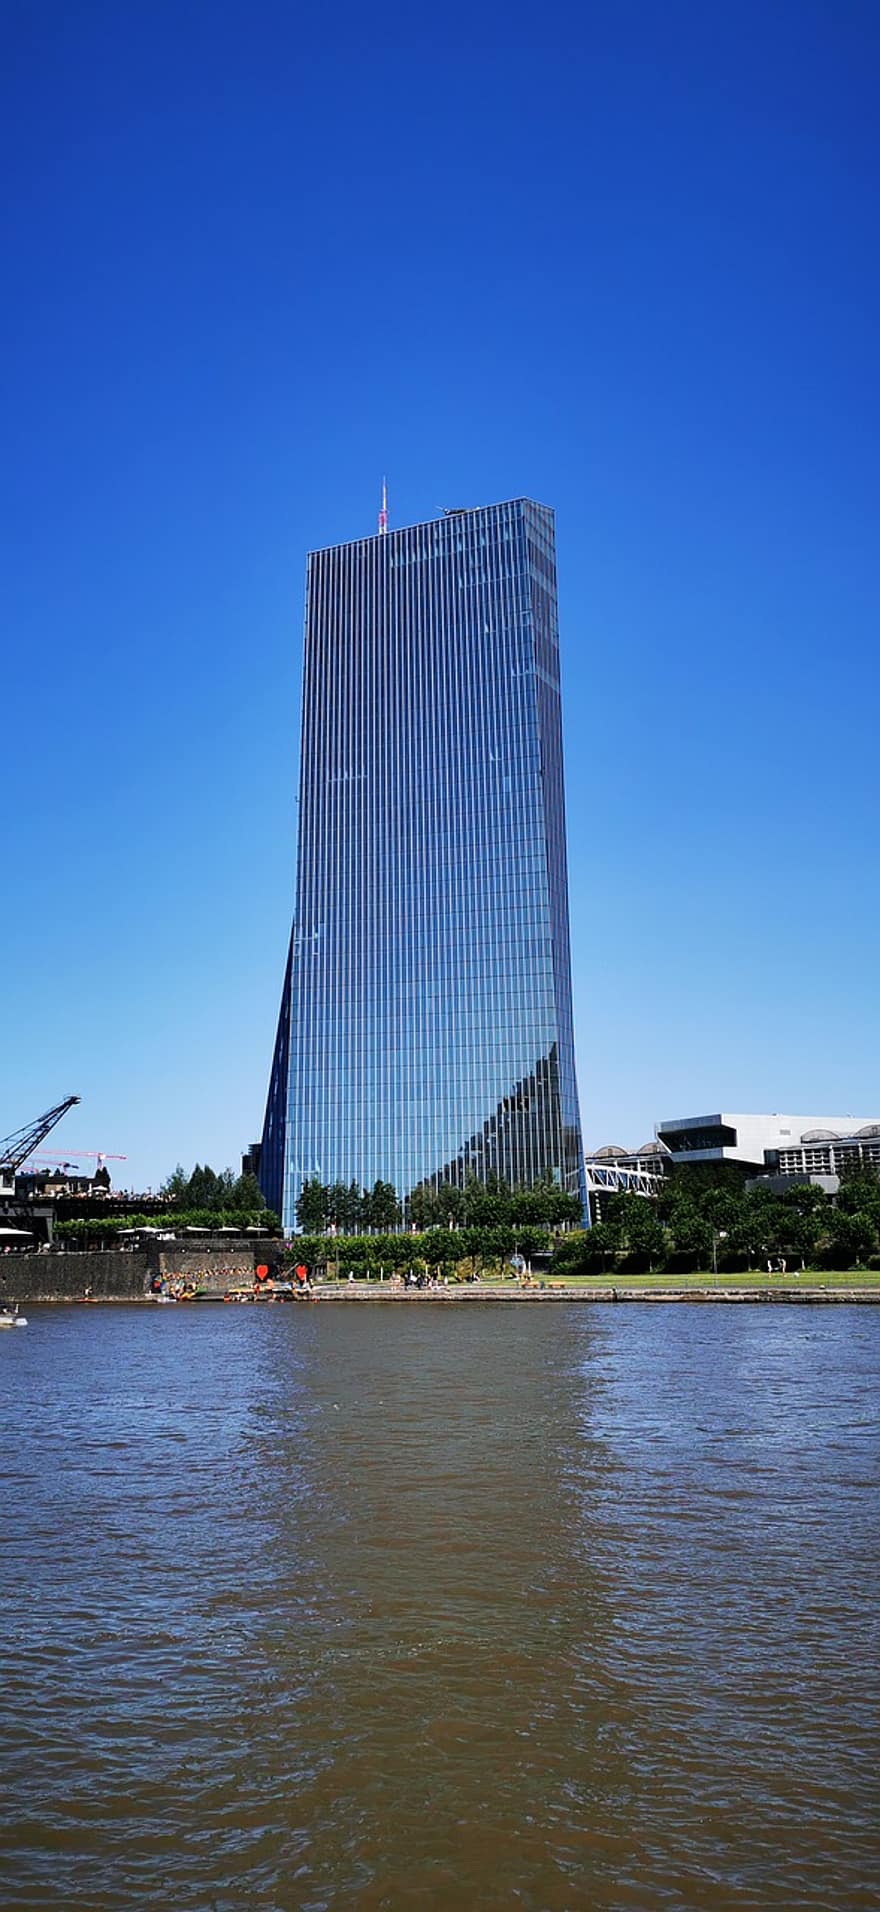 Evropské centrální banky, budova, řeka, frankfurt, Německo, skleněné budovy, mrakodrap, architektura, město